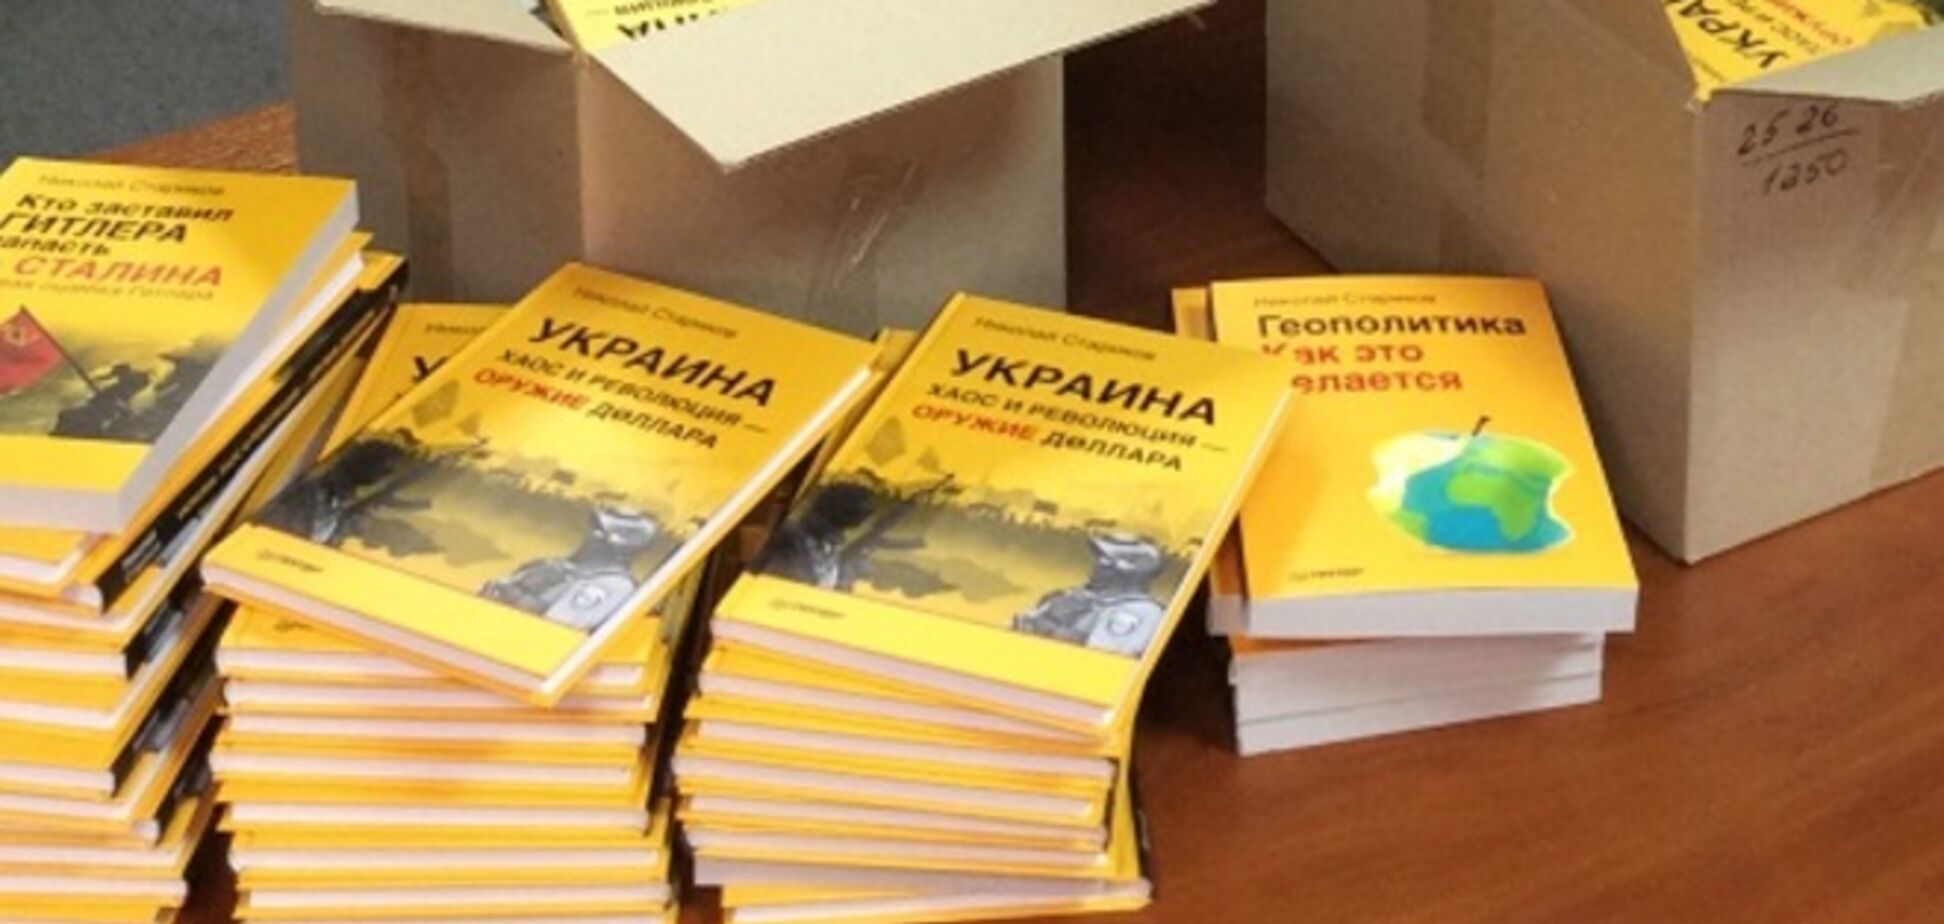 Російська партія відправила на Донбас книги в якості гуманітарки